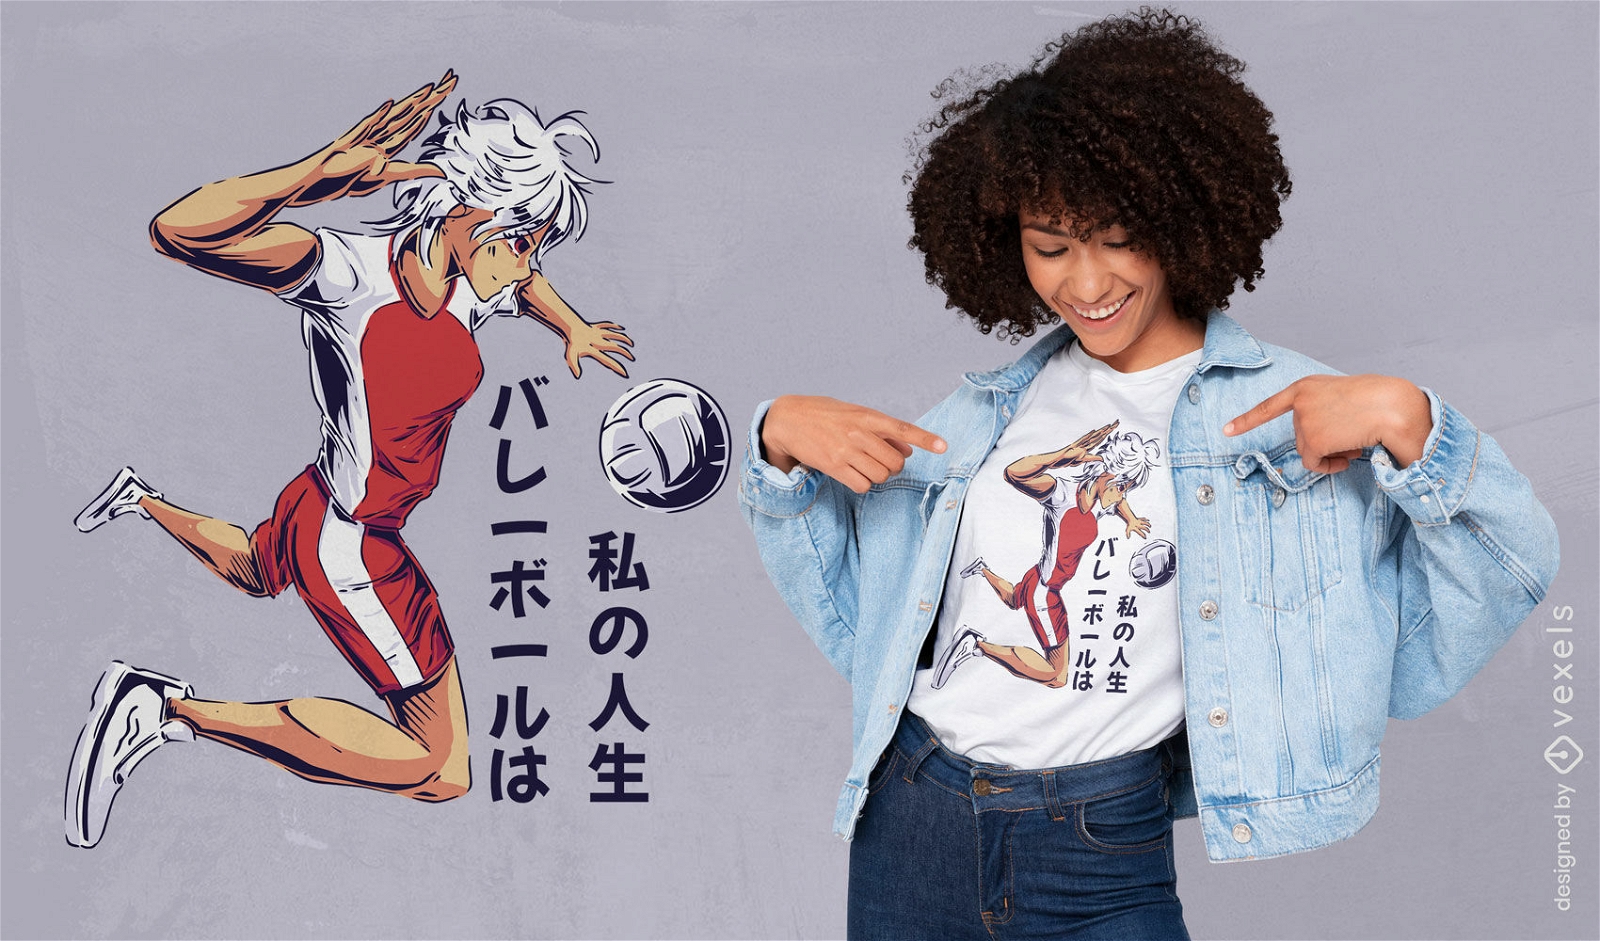 Garota de anime jogando design de camiseta de vôlei